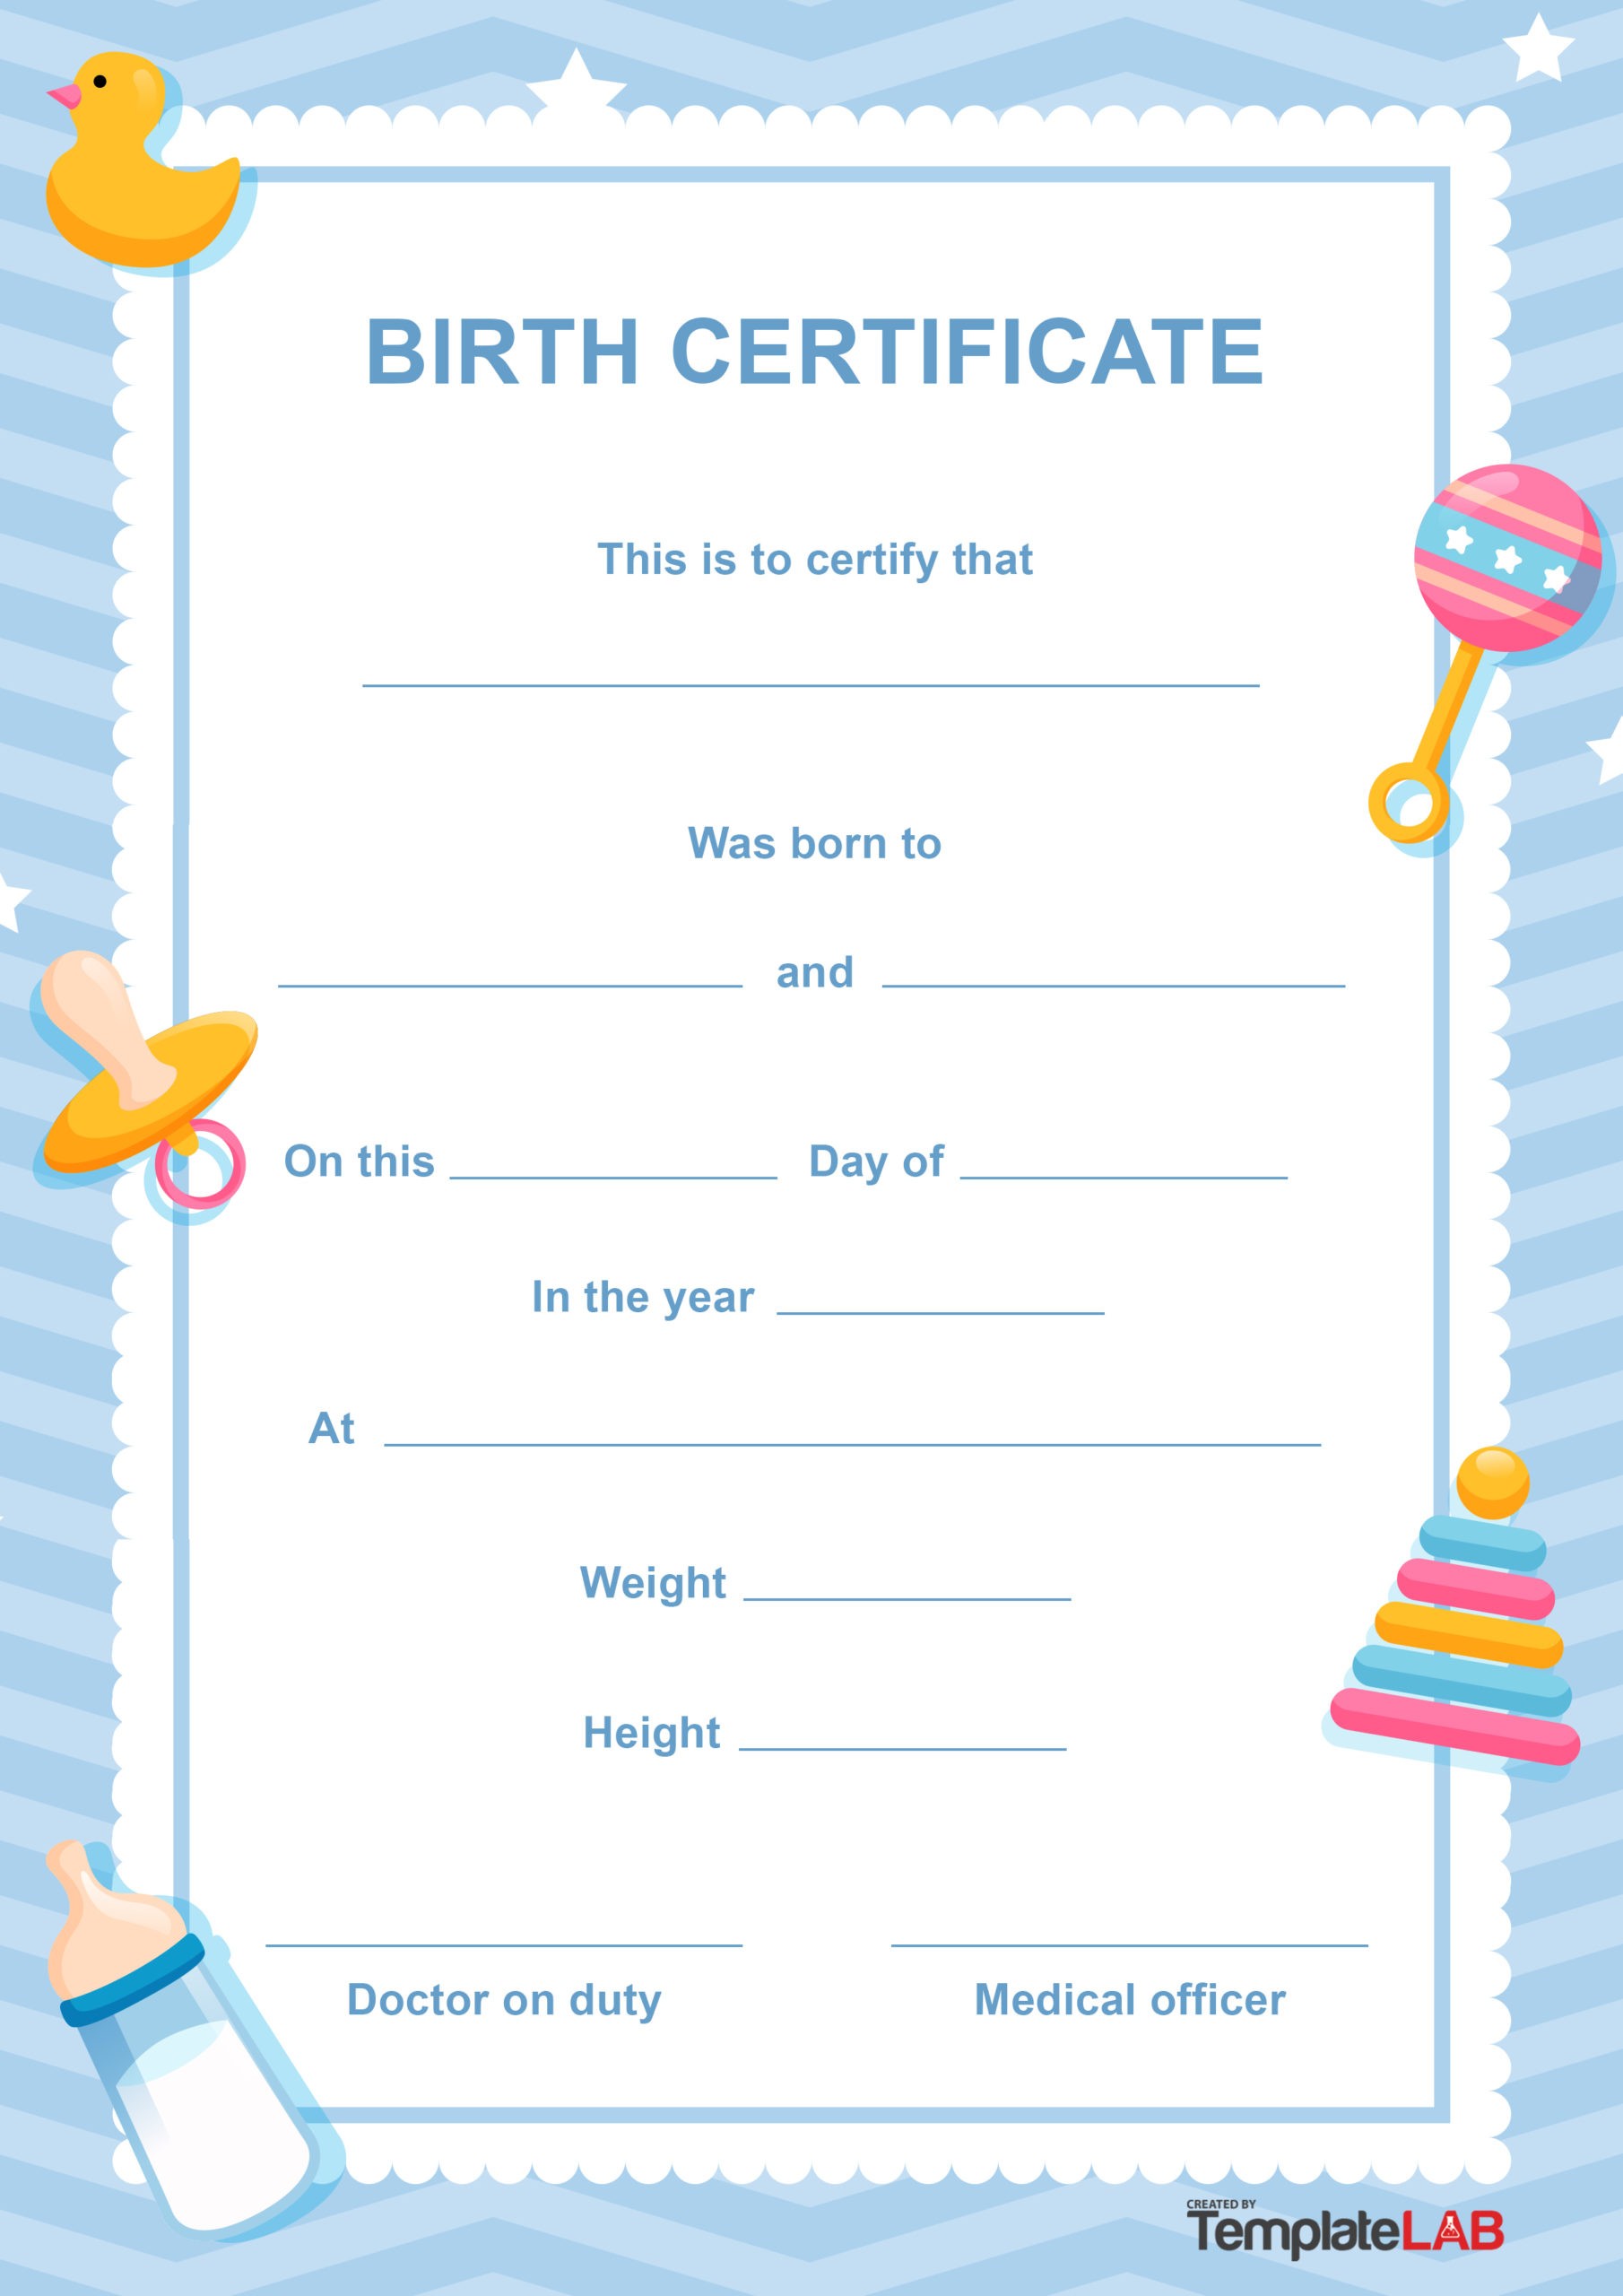 15 Plantillas de Certificados de Nacimiento (Word y PDF) ᐅ TemplateLab